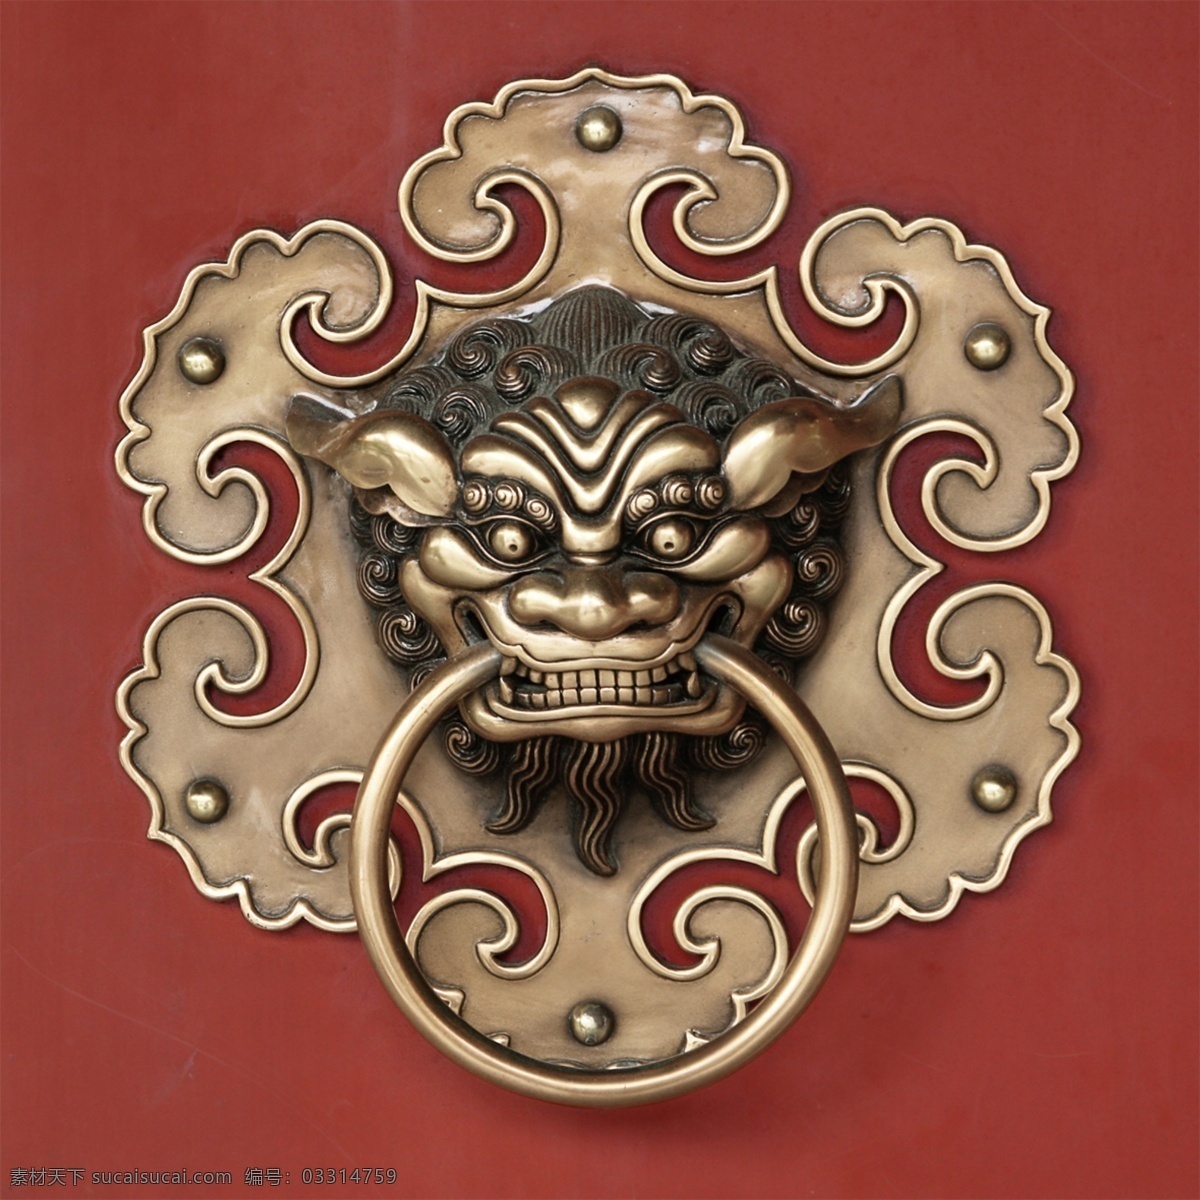 霸气 狮子头 门 把手 门把手 分层 金黄狮子头 中国风古典 铁器 创意 背景 怀旧 创意设计 文化艺术 传统文化